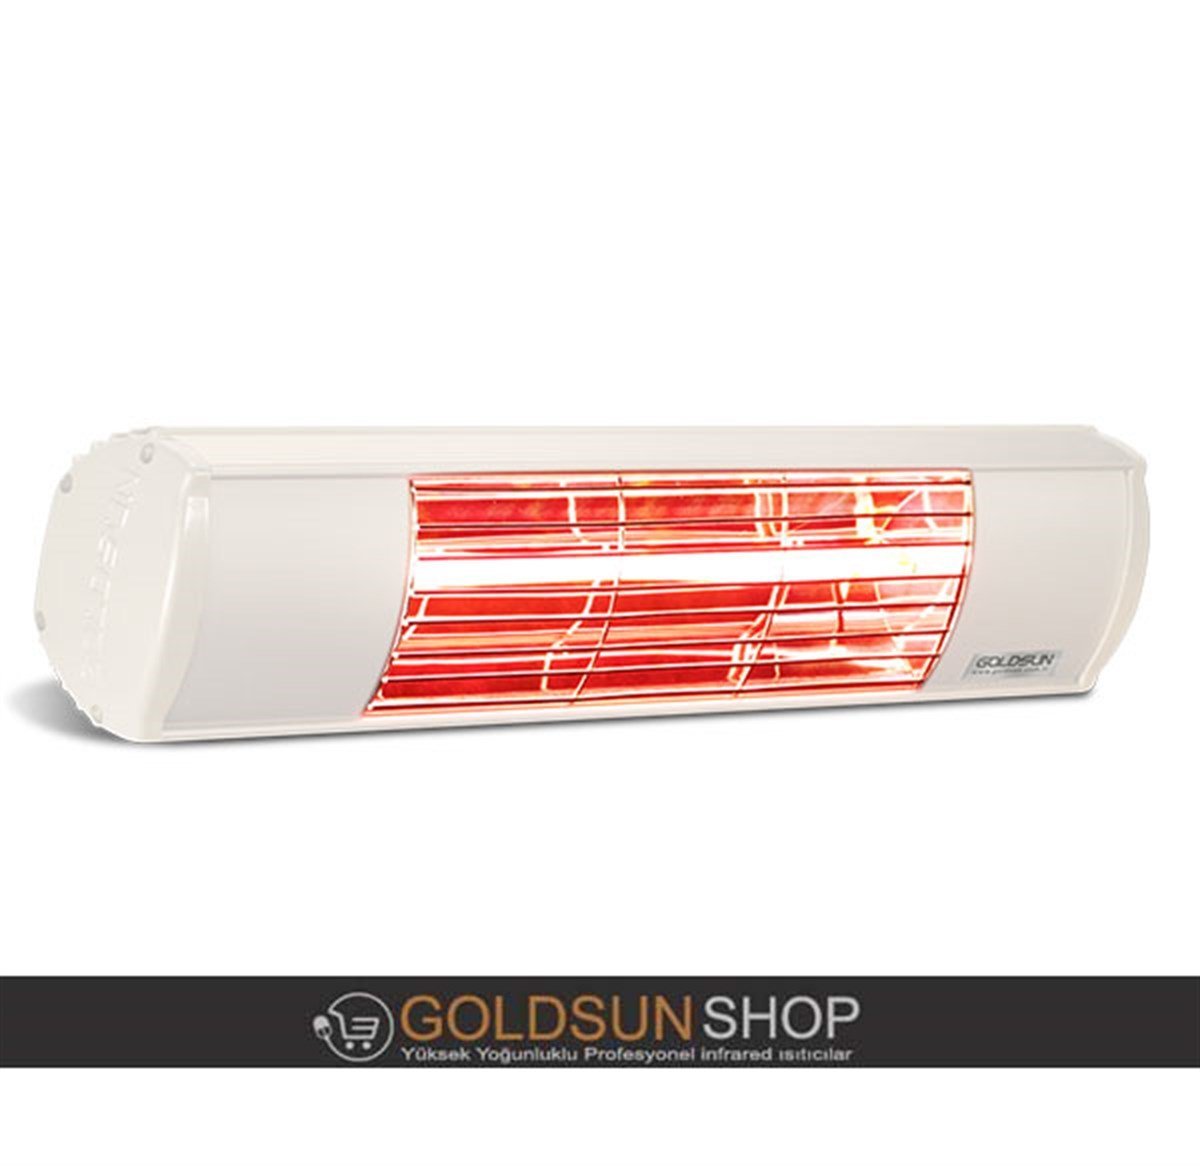 Goldsun Aqua 1500W Su Korumalı Yüksek Yoğunluklu Elektrikli Dış Mekan Infrared  Isıtıcı